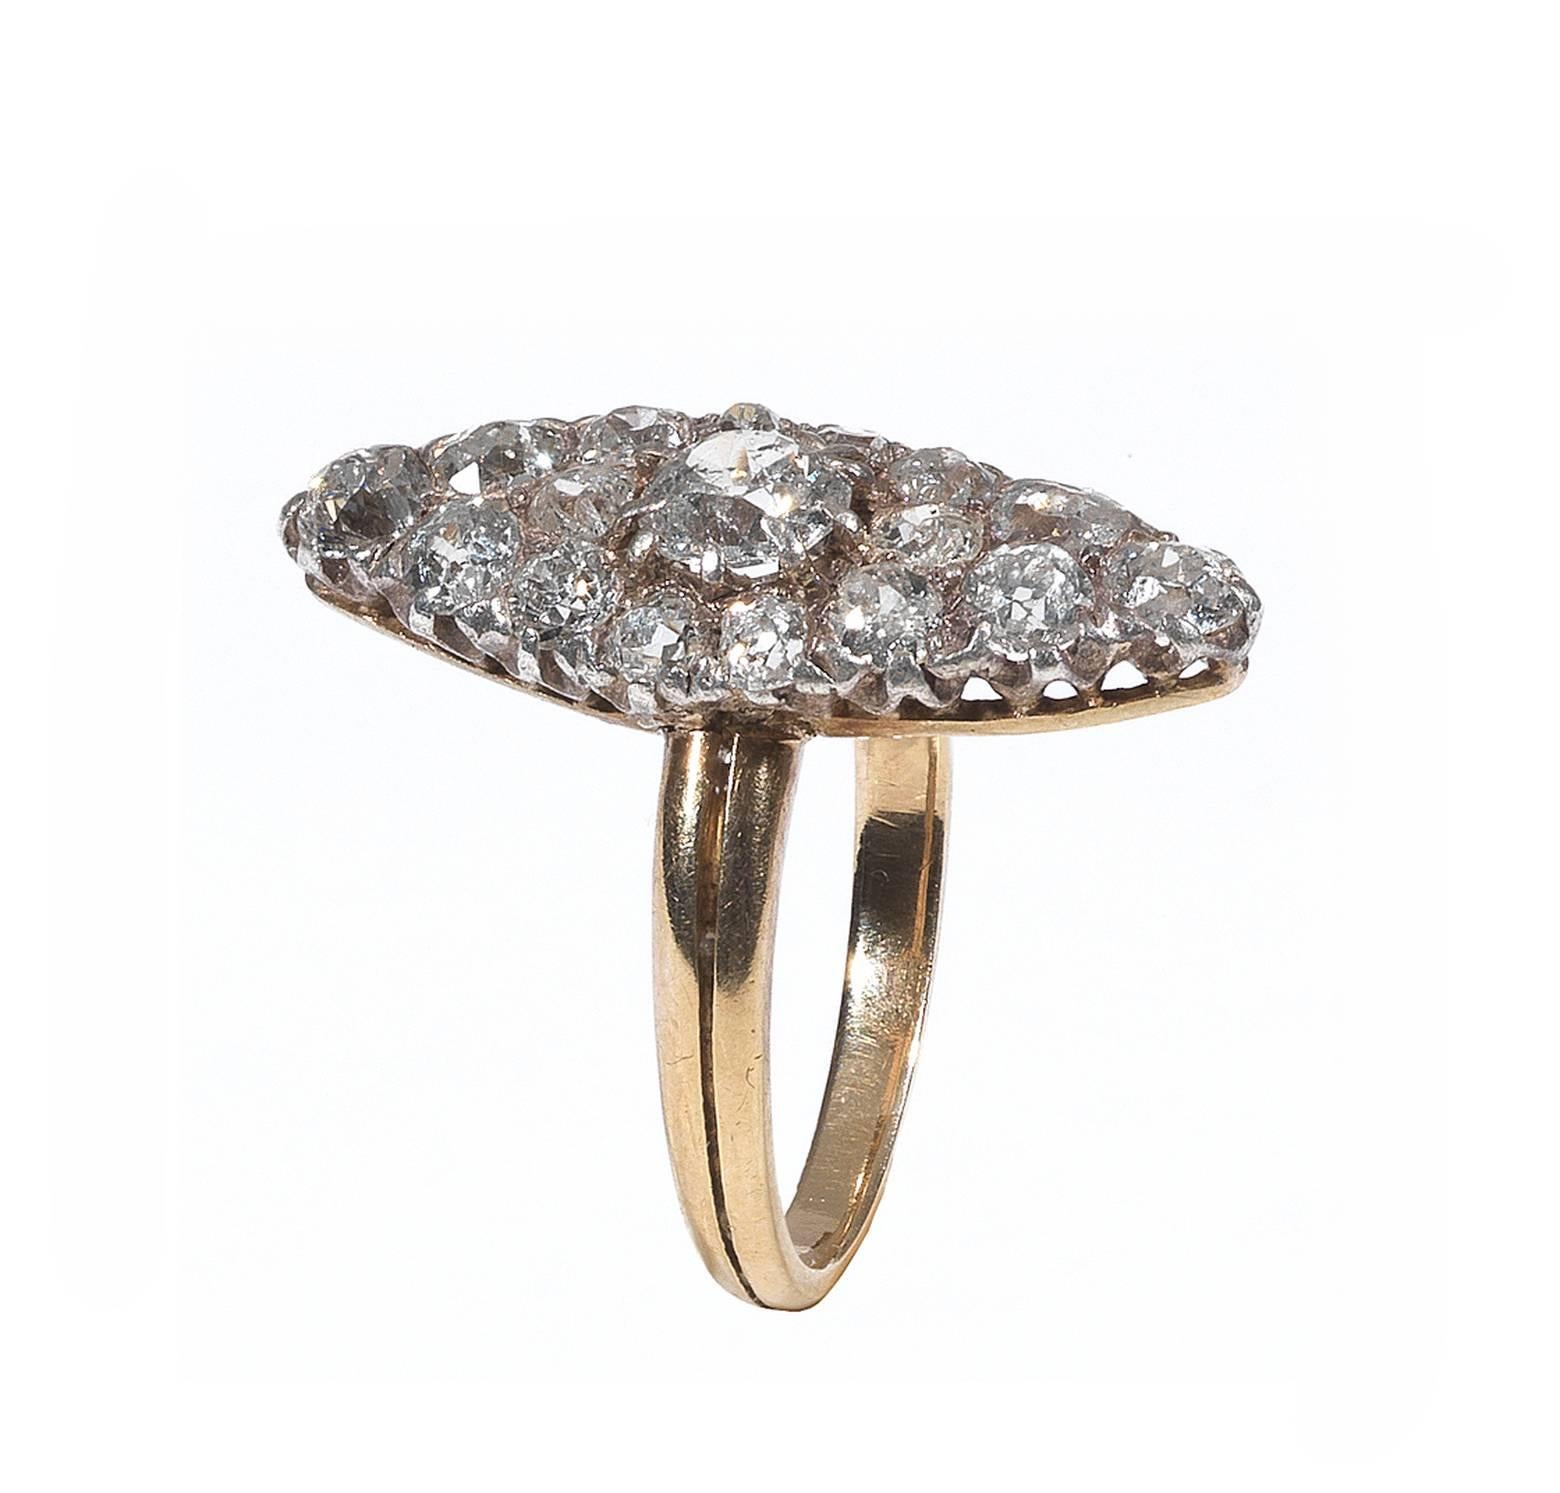 De forme marquise, sertie de diamants taille brillant anciens pesant environ trois carats, sur une tige en or.

Lunette de 2,3 cm sur 1,0 cm.

Taille du doigt : 6 1/2

Poids : 4 gr
